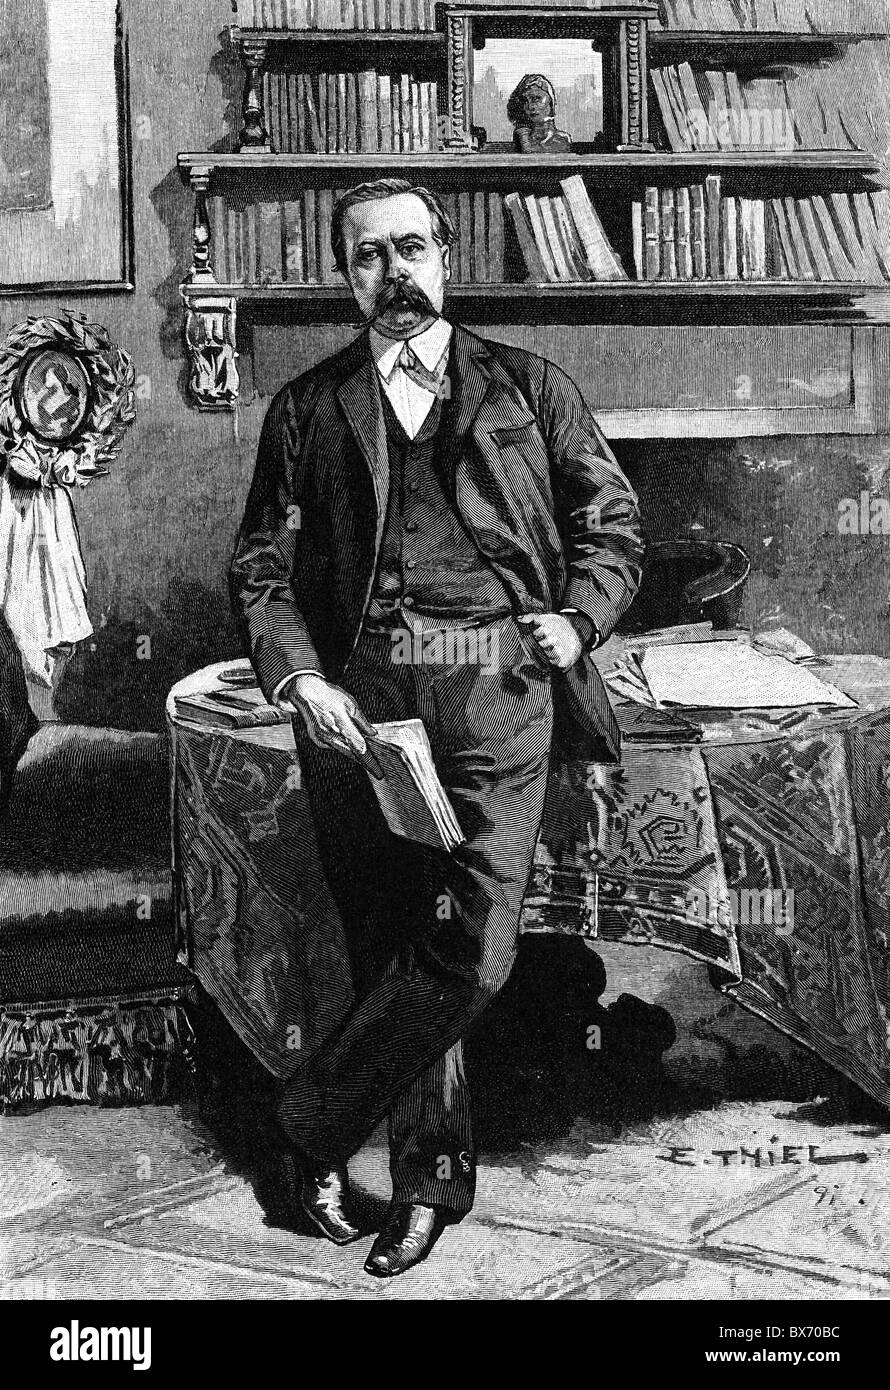 Wildenbruch, Ernst von, 3.2.1845 - 15.1.1909, German author / writer, full length, wood engraving by Ewald Thiel, 1891, Stock Photo